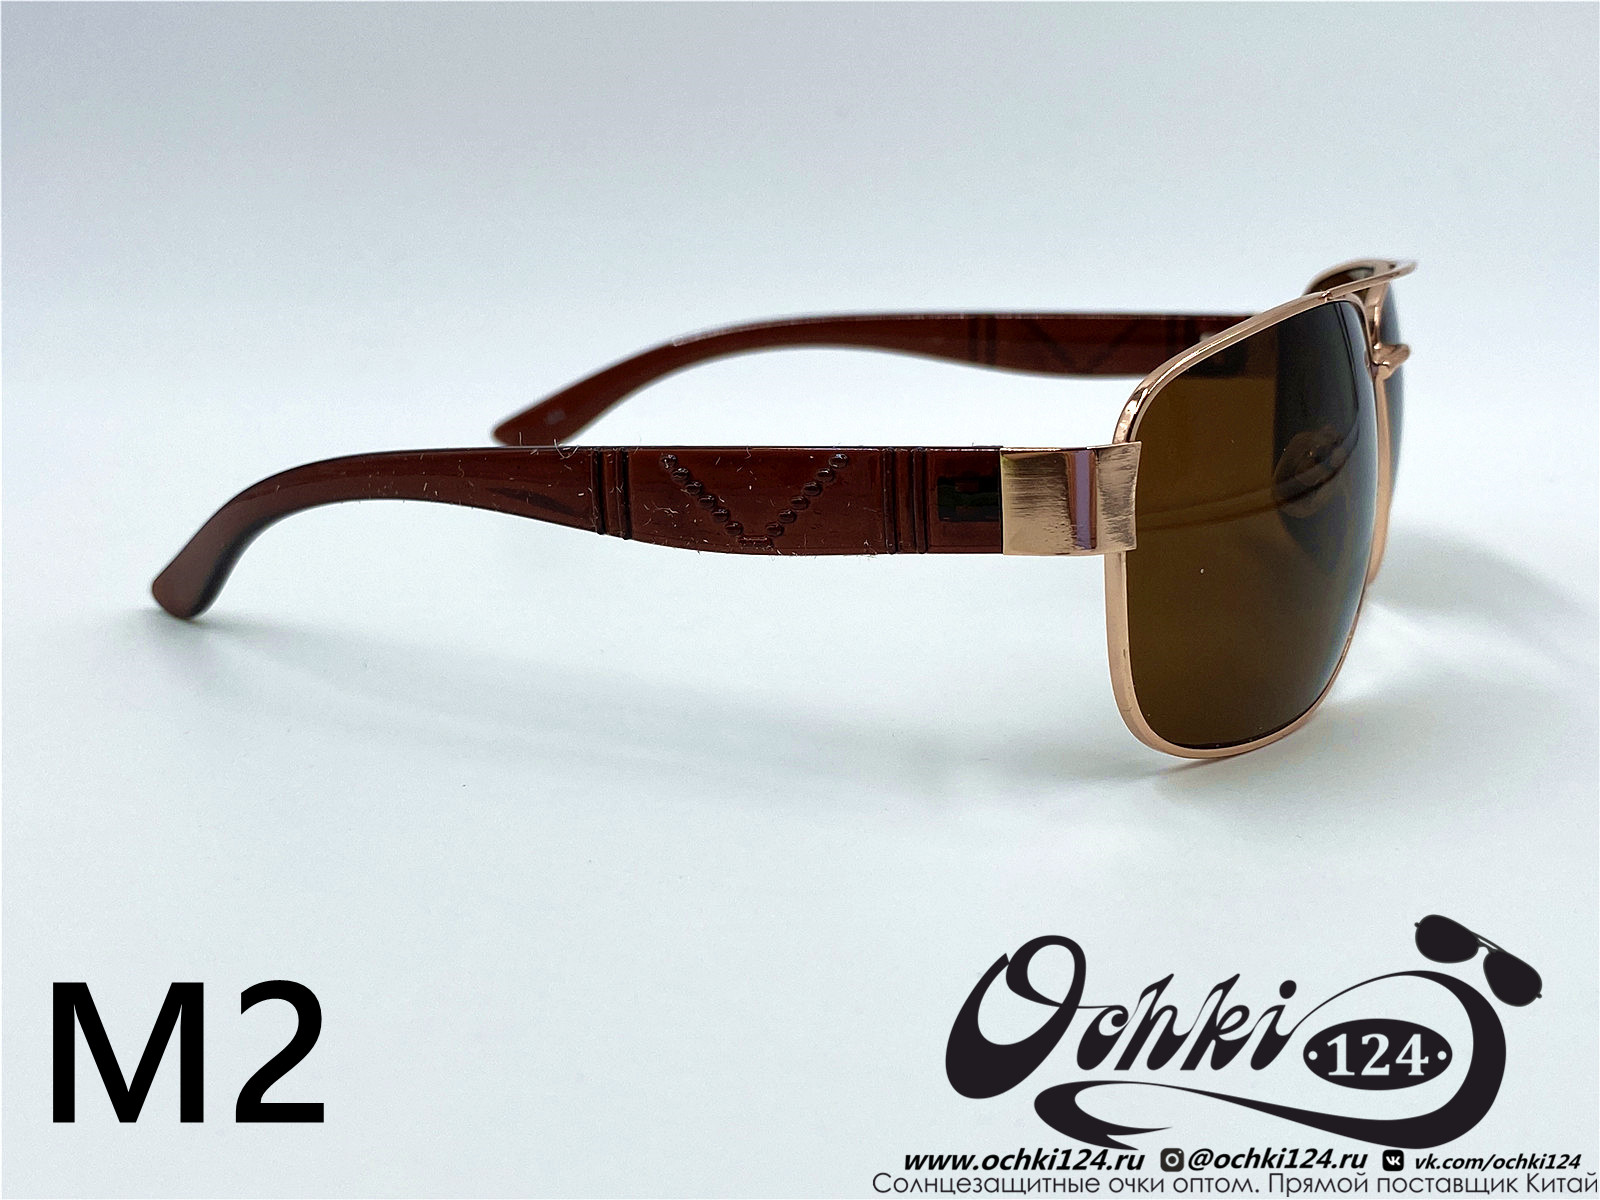  Солнцезащитные очки картинка 2022 Мужские Квадратные KaiFeng M2-4 